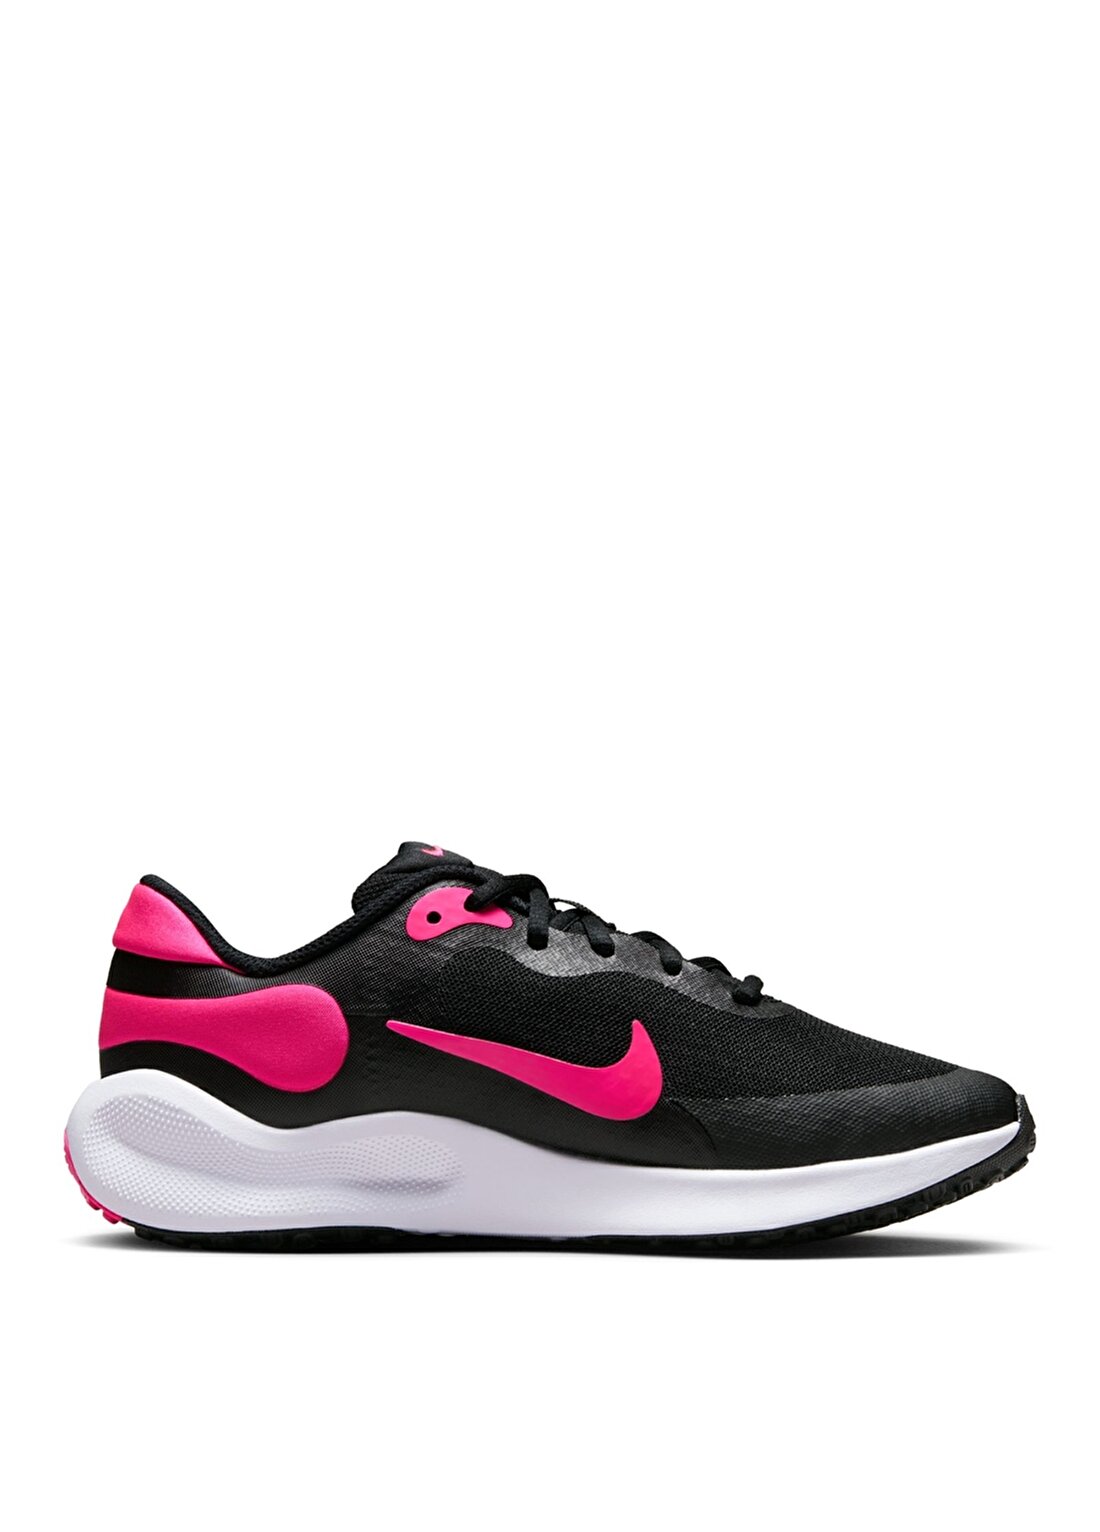 Nike Siyah - Pembe Kız Çocuk Yürüyüş Ayakkabısı FB7689-002 NIKE REVOLUTION 7 (GS)